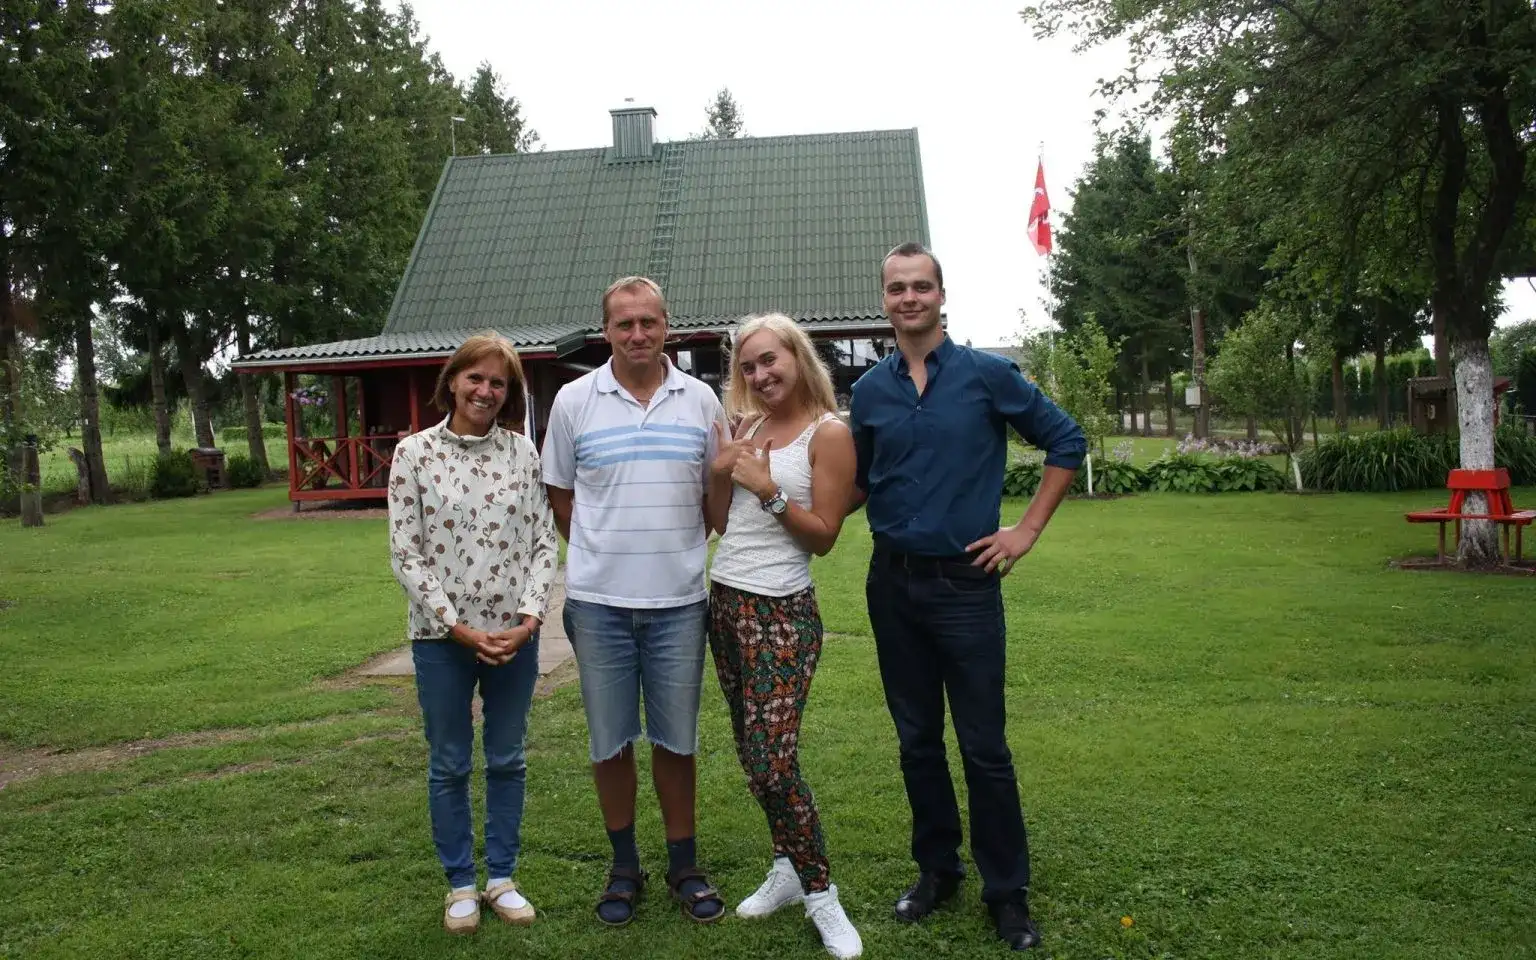 At Kamile’s parents’ Virginijus and Gražina homestead. Narvydžiai, Skuodas District, Lithuania